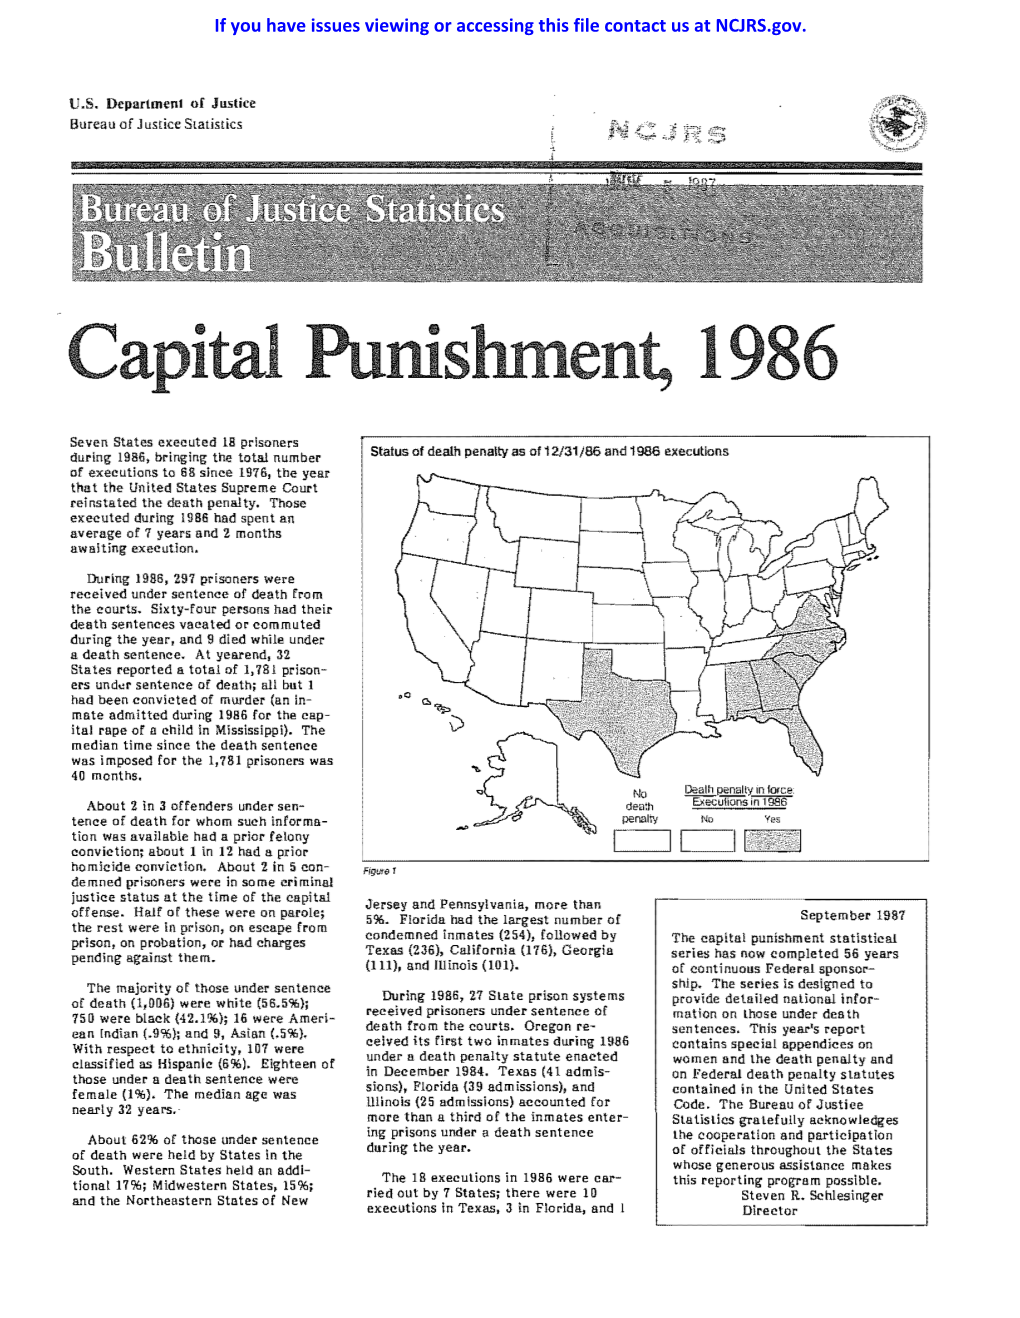 Capital Punishment, 1986